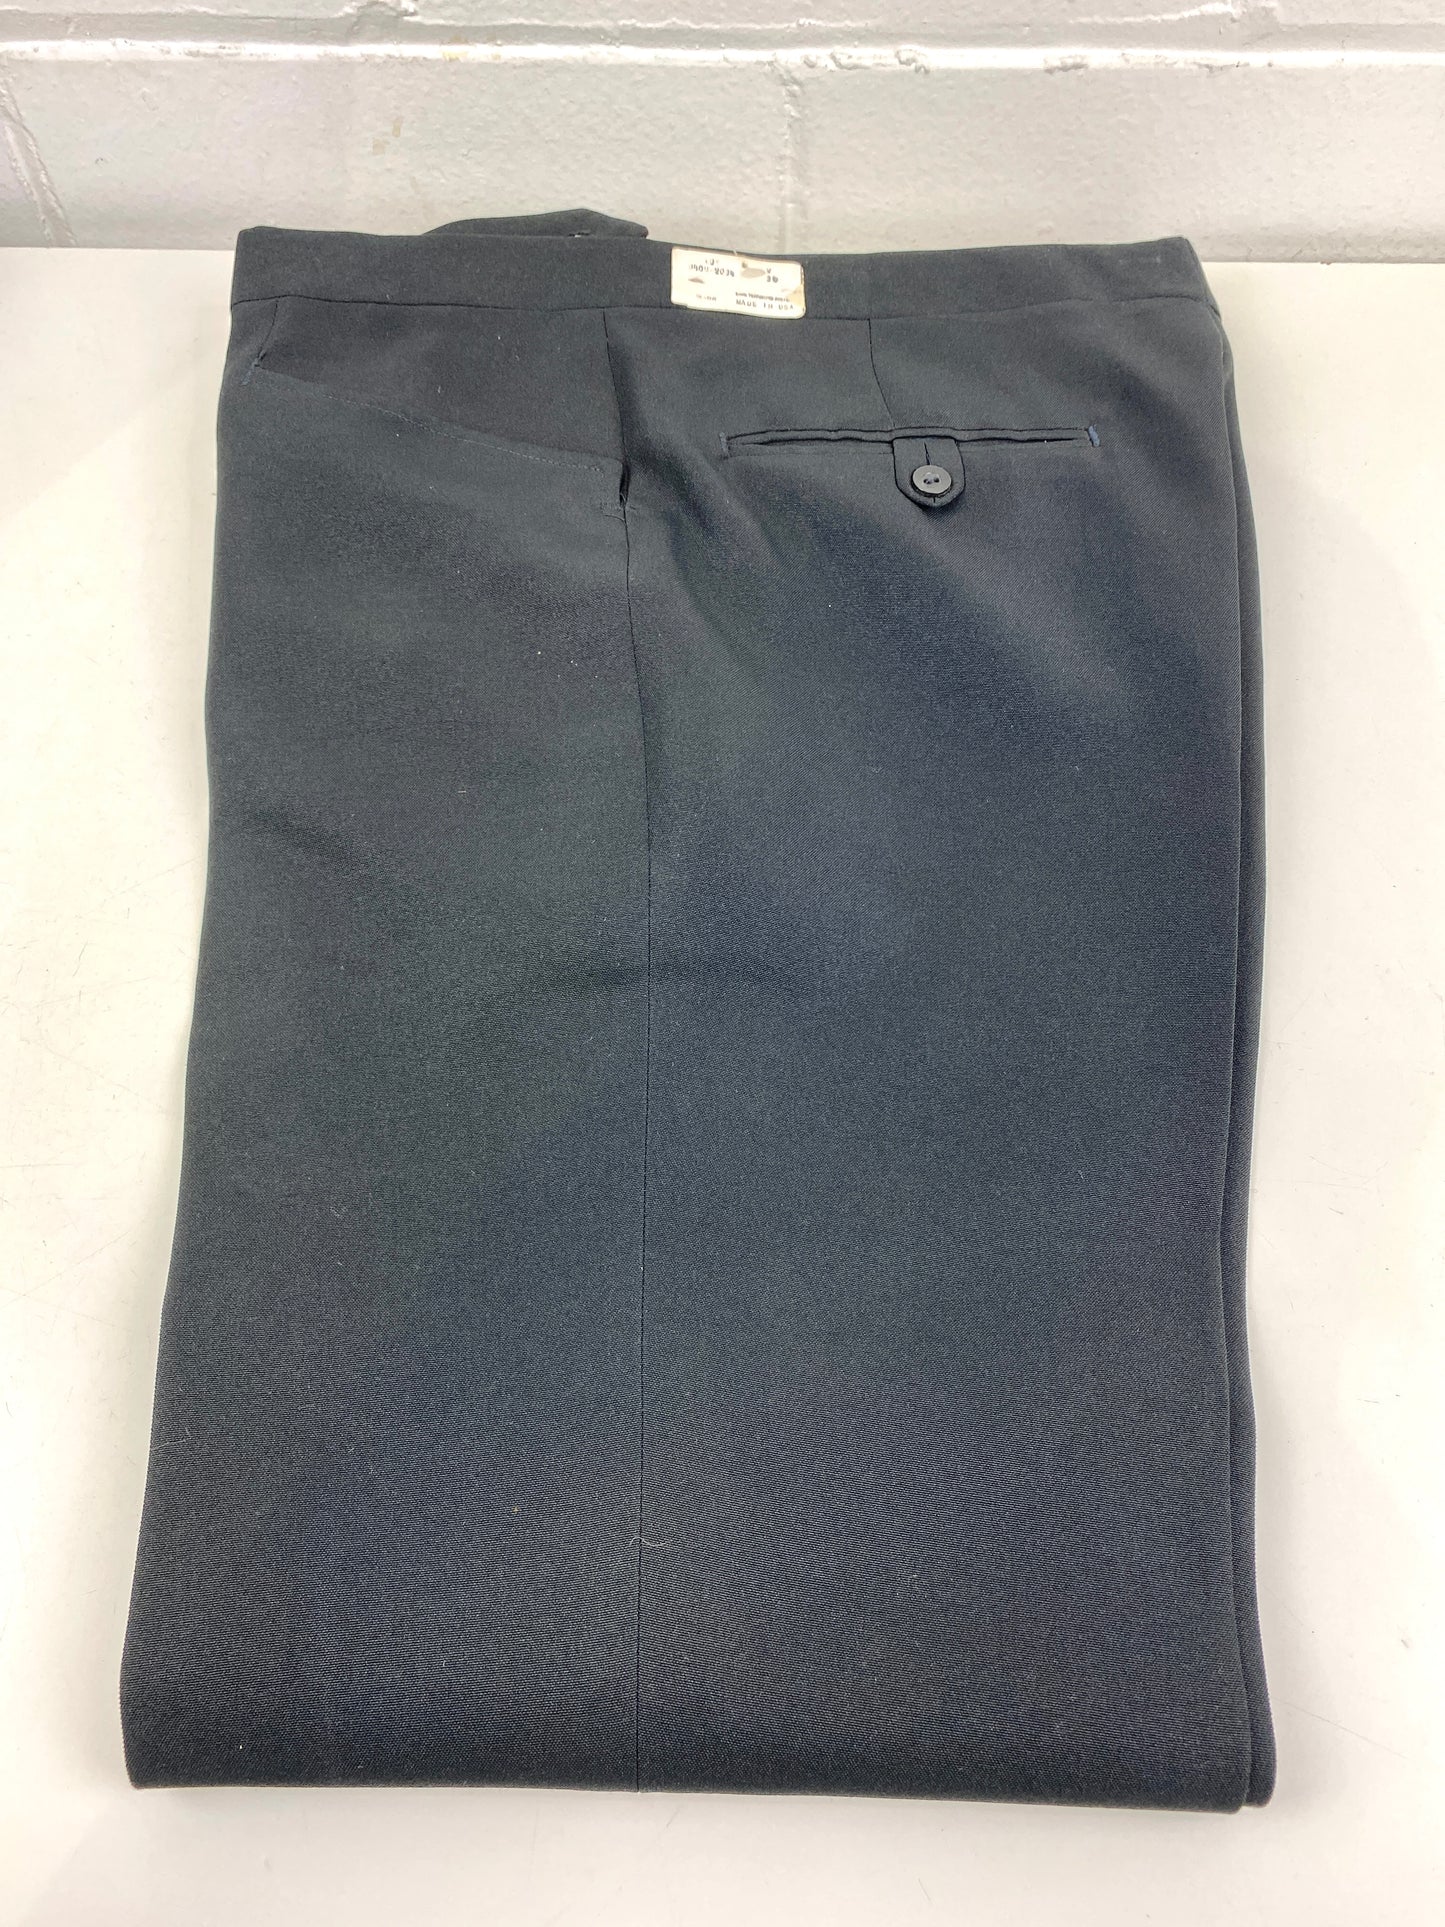 Vintage 1970s Deadstock Polyester Straight Trousers, Men's Black Slacks, NOS